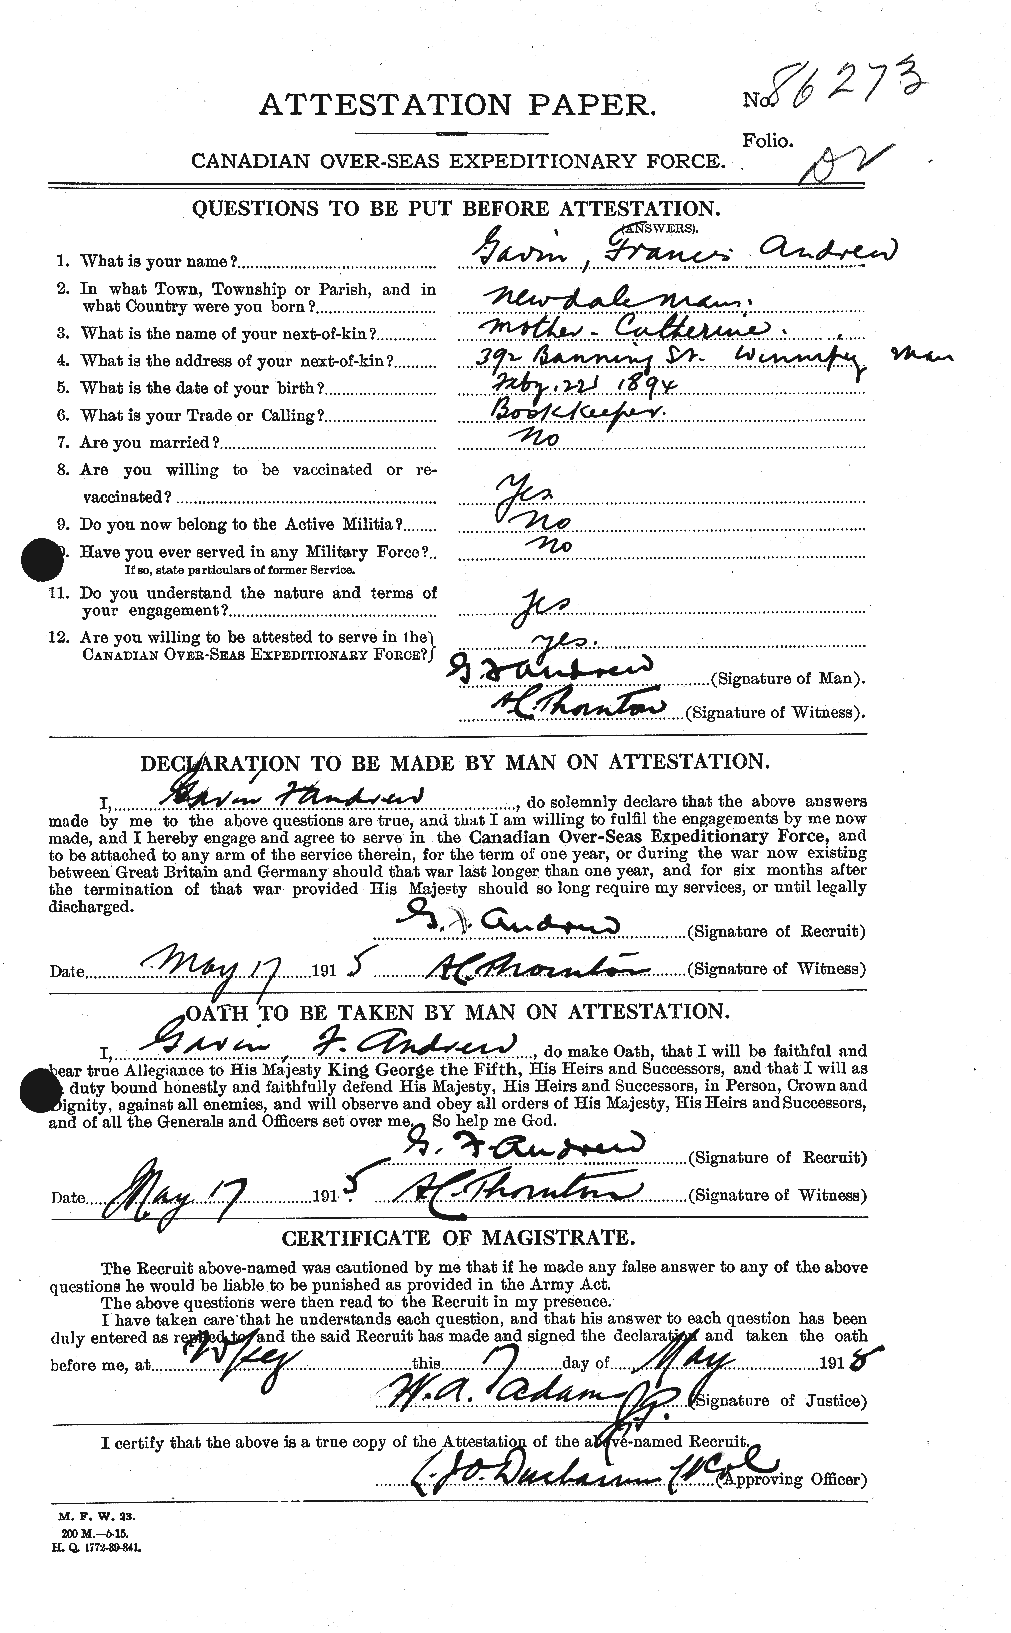 Dossiers du Personnel de la Première Guerre mondiale - CEC 210976a